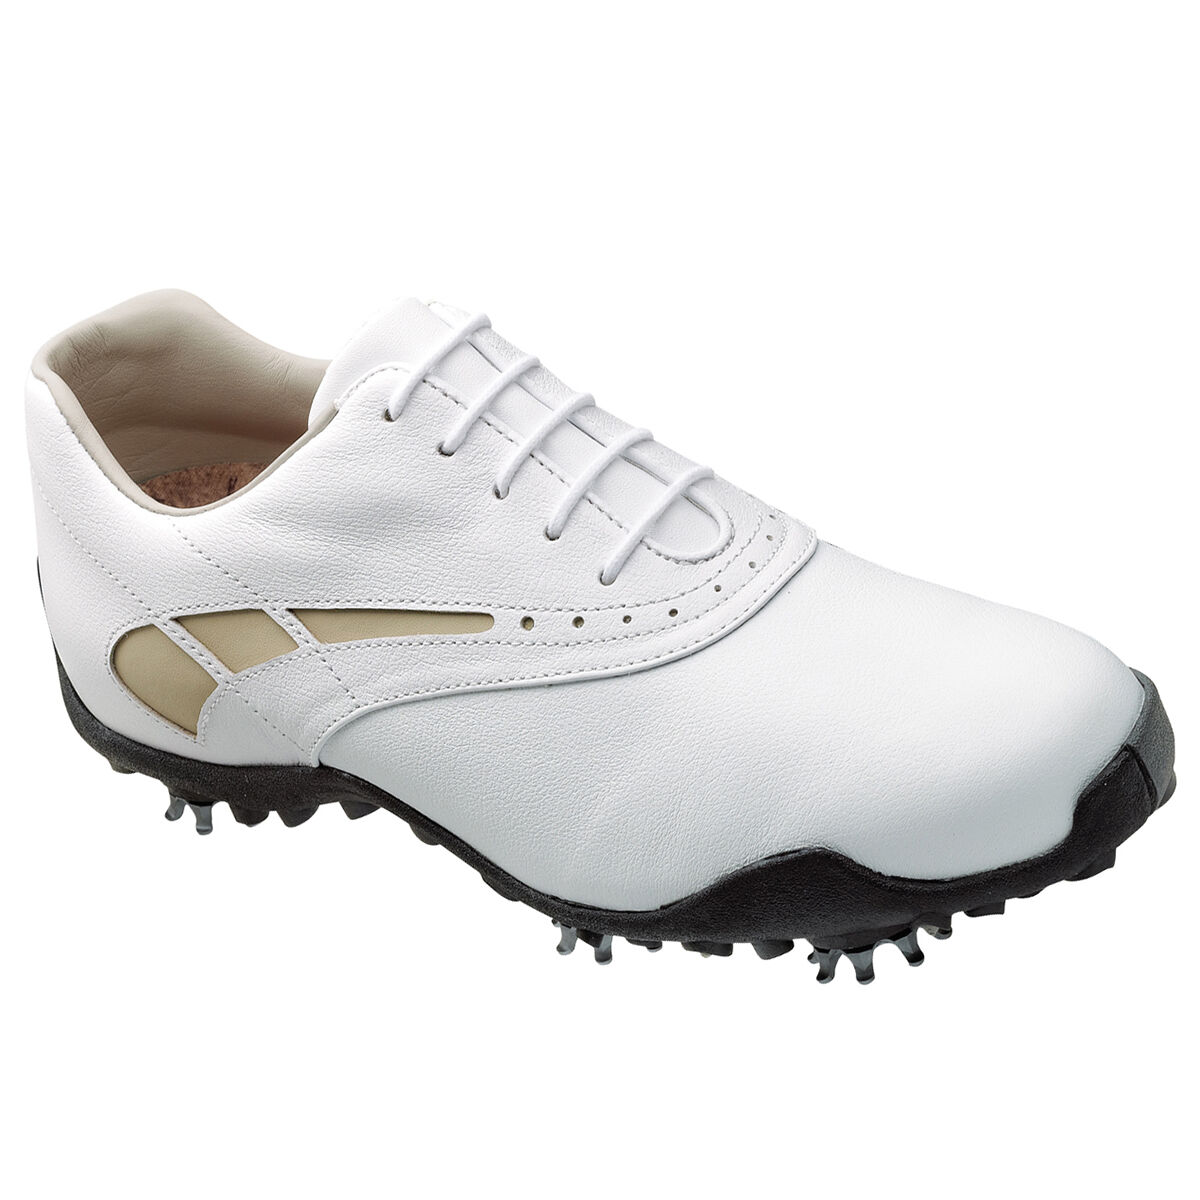 FootJoy LoPro Women's Golf Shoe: Shop Quality FootJoy Women's Golf ...